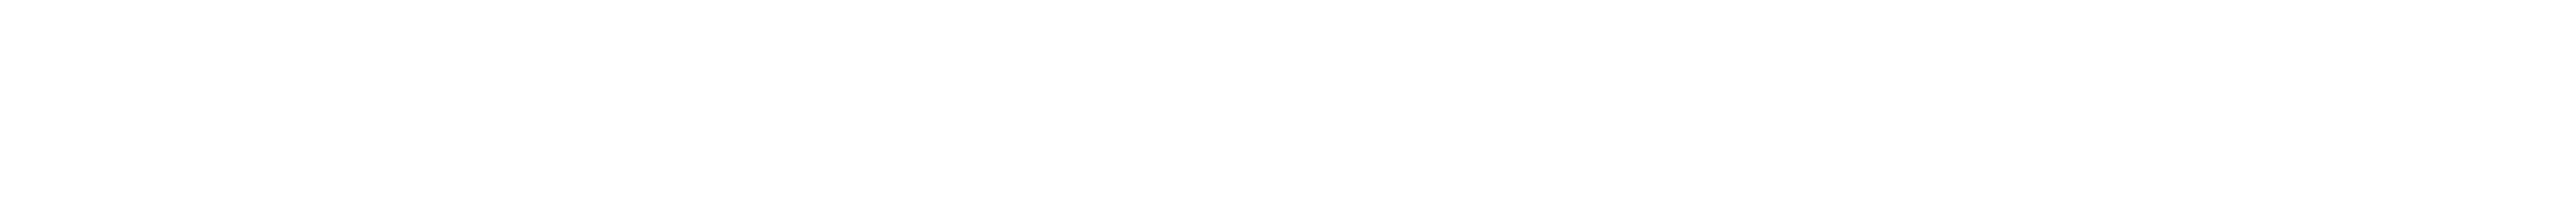 يوسف محجوب عوص يوسف stylish signature style. Best Handwritten Sign (Autography-DOLnW) for my name. Handwritten Signature Collection Ideas for my name يوسف محجوب عوص يوسف. يوسف محجوب عوص يوسف signature style 10 images and pictures png